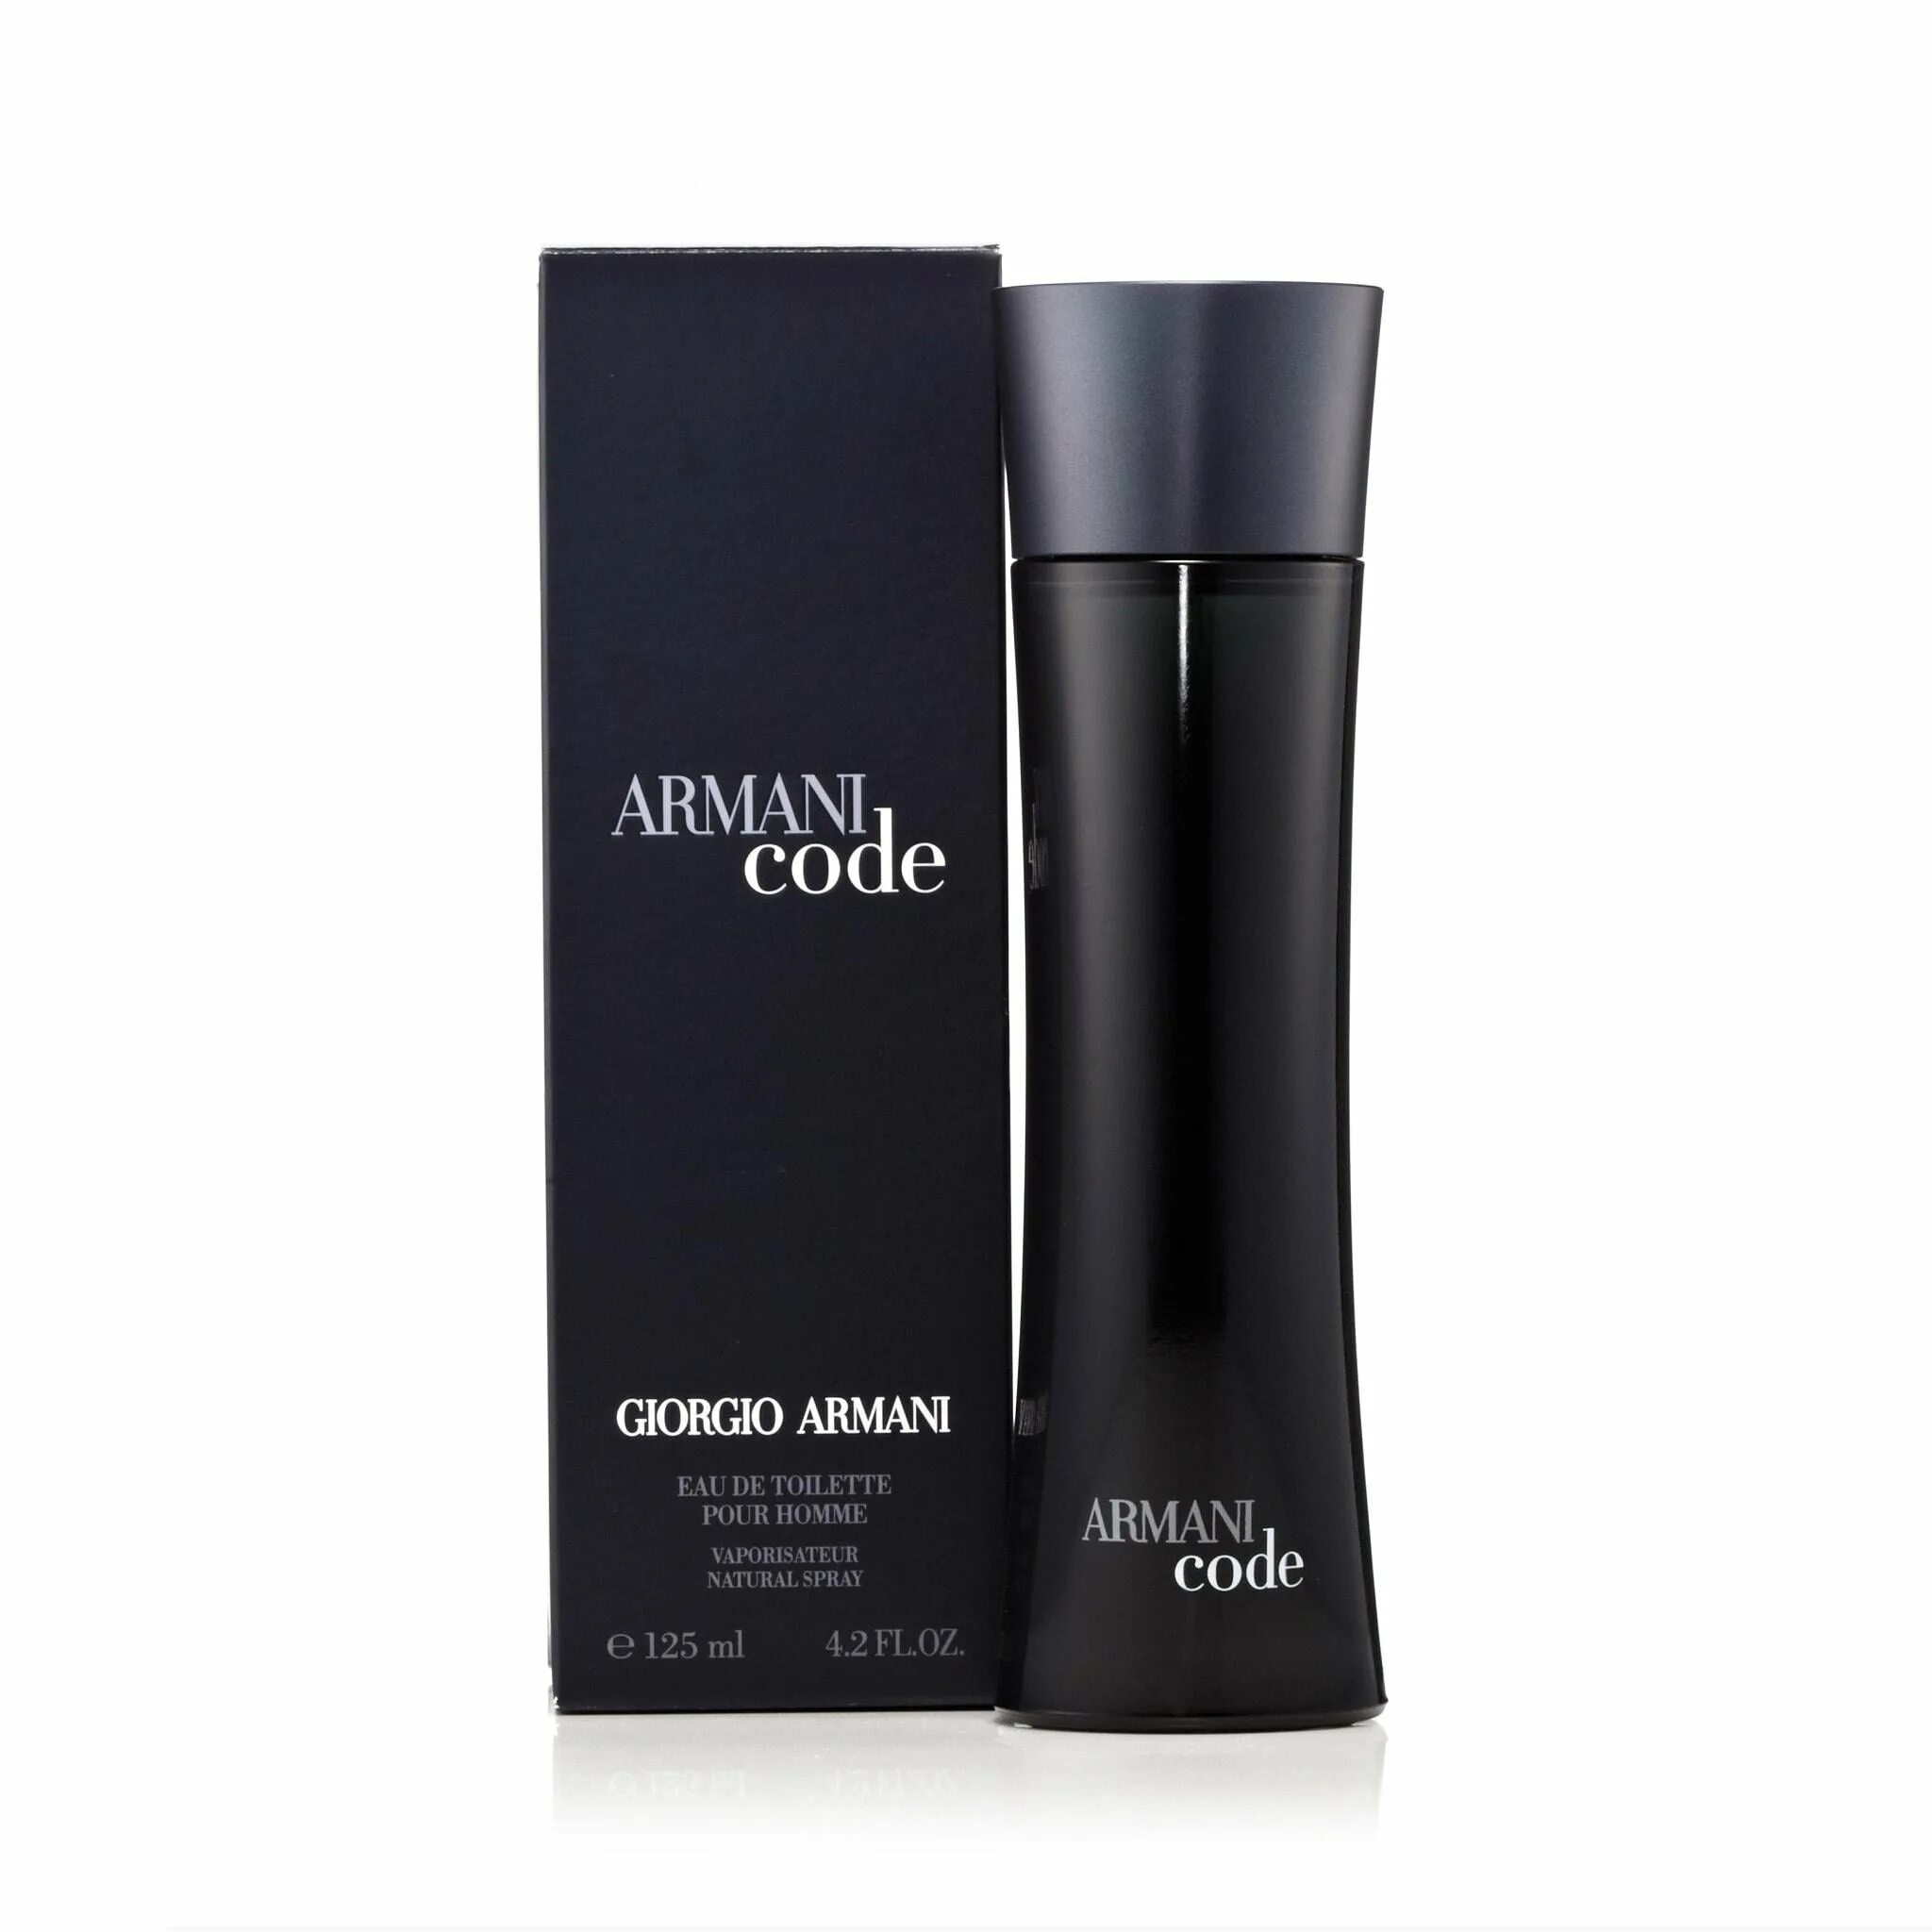 Armani code pour homme. Giorgio Armani Armani code. Giorgio Armani Armani code Parfum, 100 ml. Giorgio Armani "Armani code Parfum" 125 ml. Armani code Black for men.